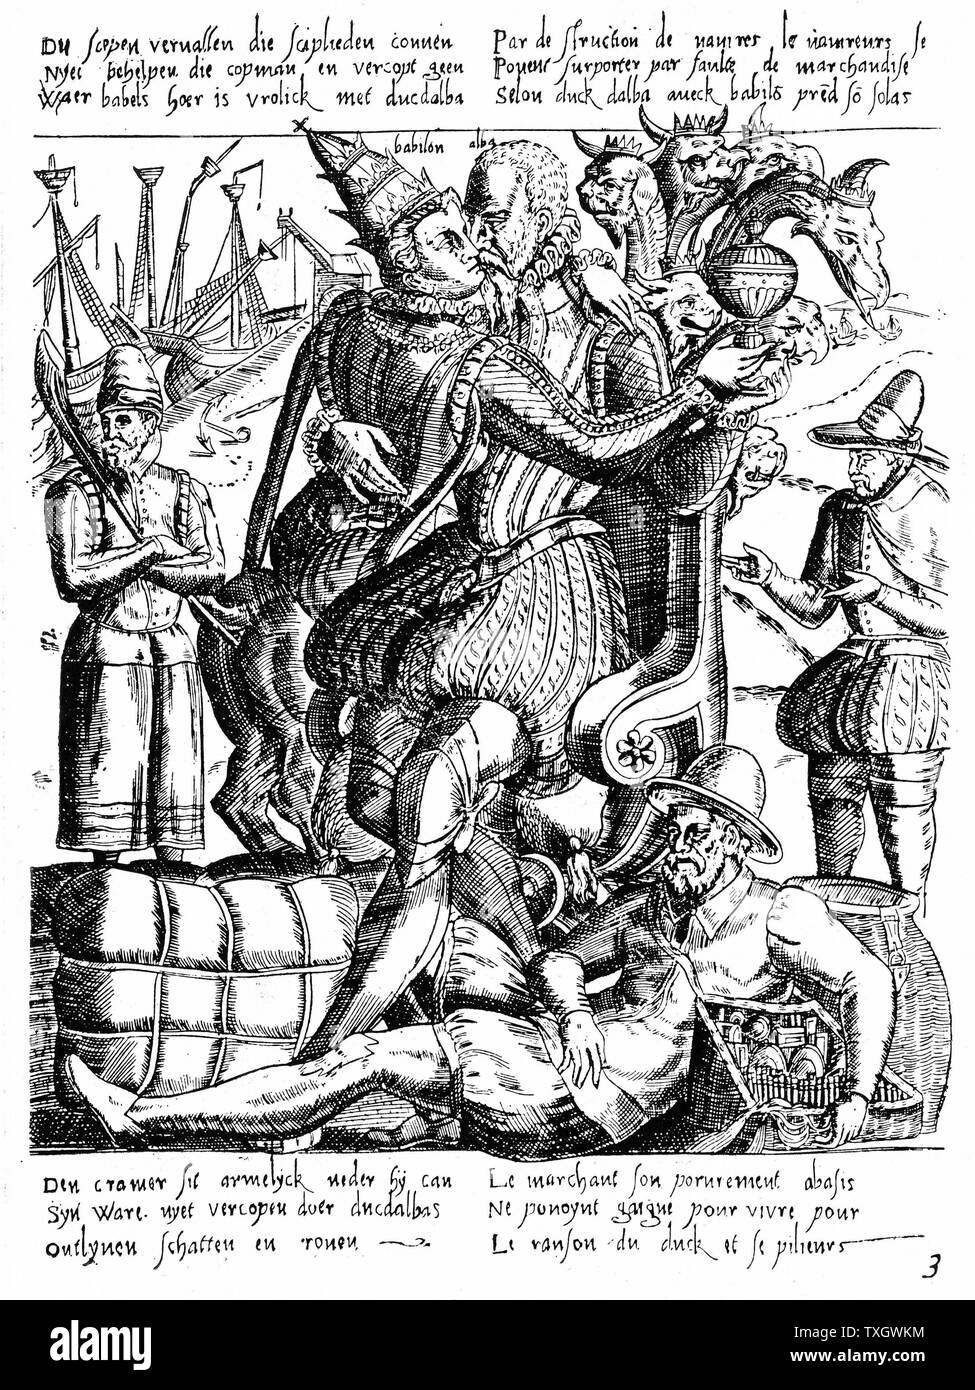 Ferdinand Alvarez de Toledo, Herzog von Alva (1508-82), spanischer General und Staatsmann. Als Generalleutnant in den Niederlanden 1567-73, erzwungene brutale Anti-protestantische Regel. Alva umarmt das Papsttum (Babylon/Korruption) 1572 Gravur Niederlande Stockfoto